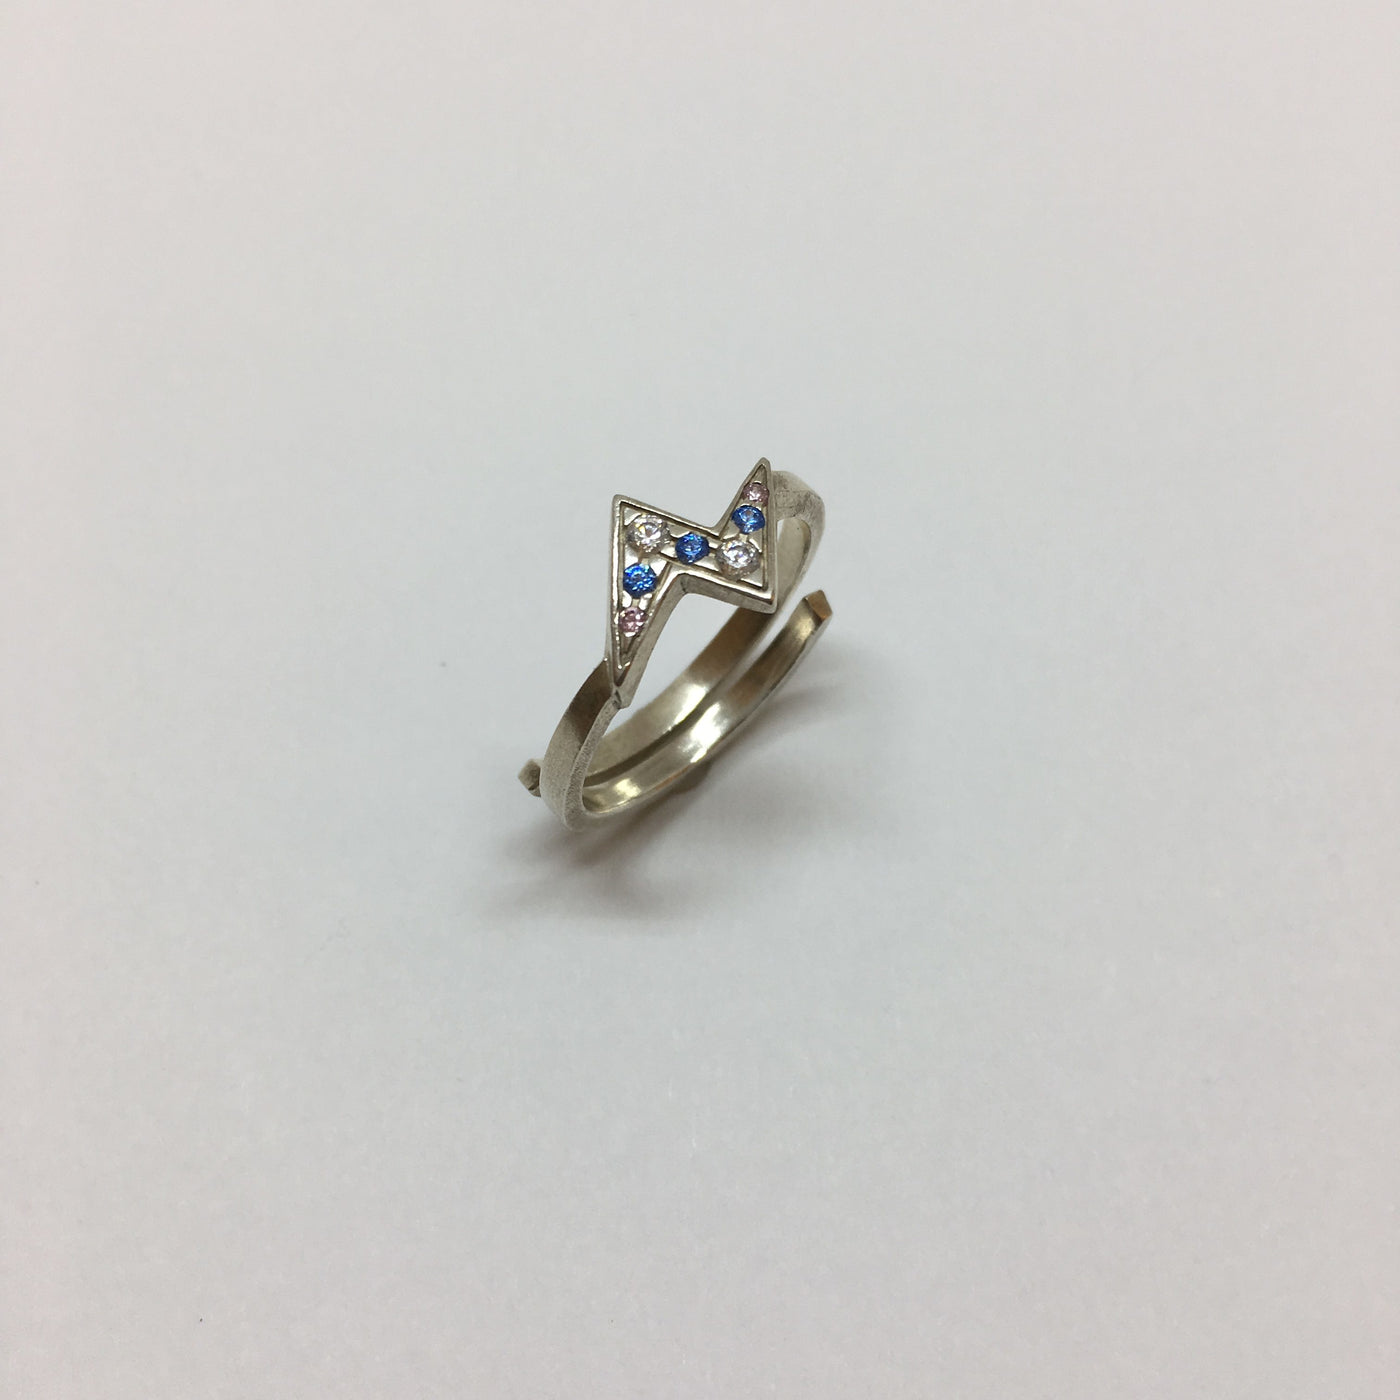 Silberner Blitz Ring mit blauen Zirkonias